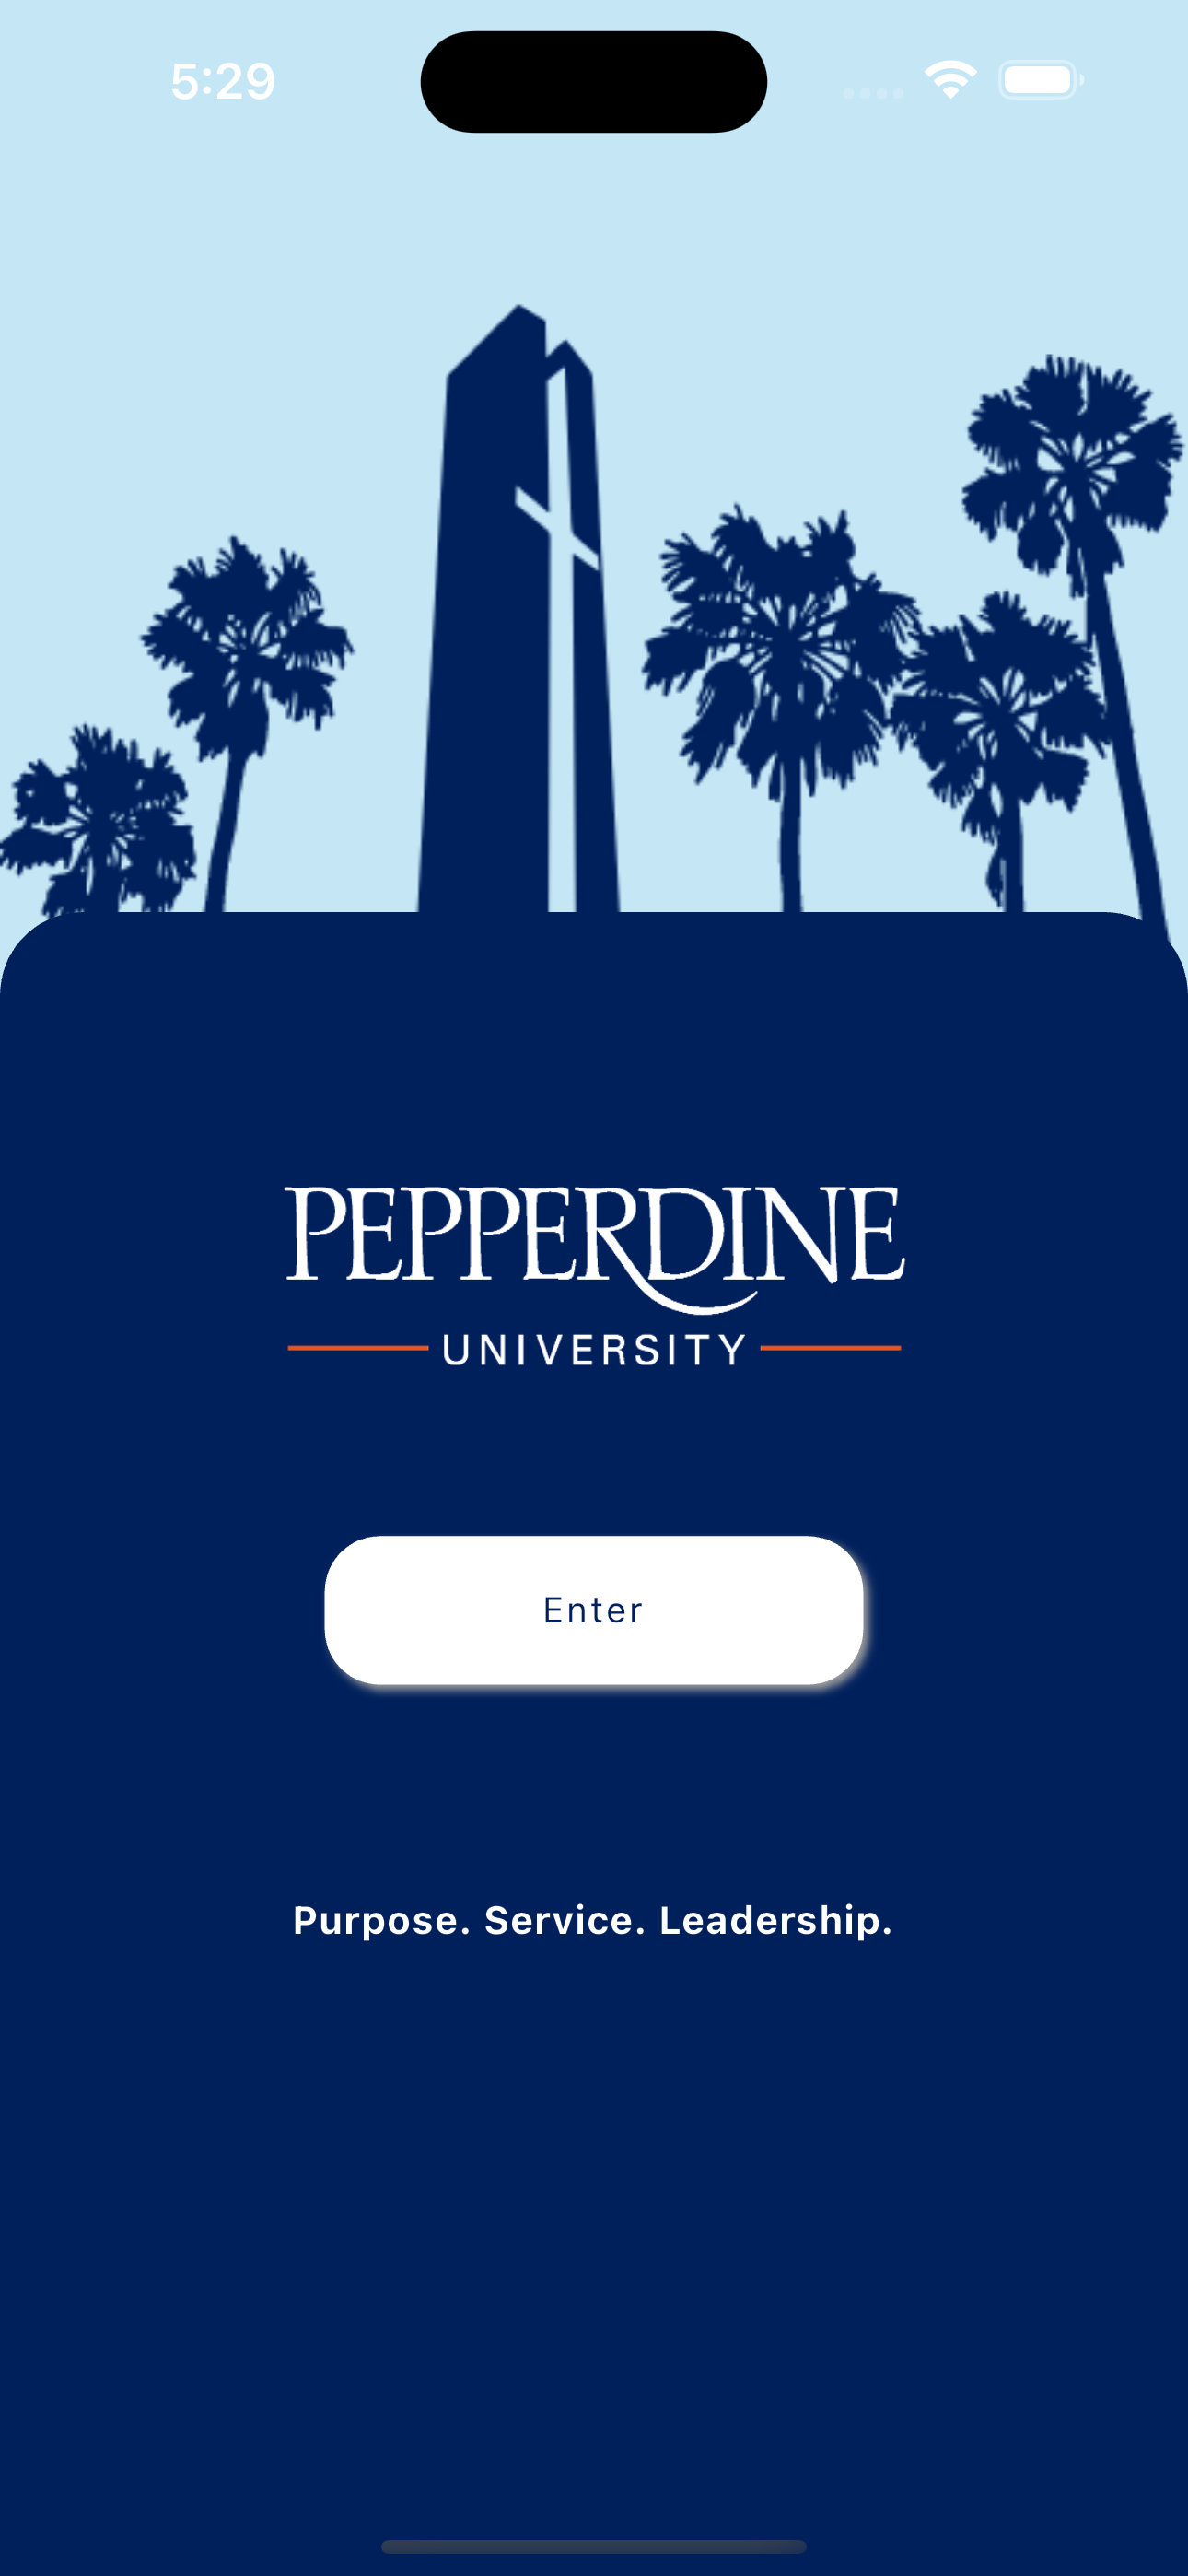 Pepperdine University Mobile App Splash Screen